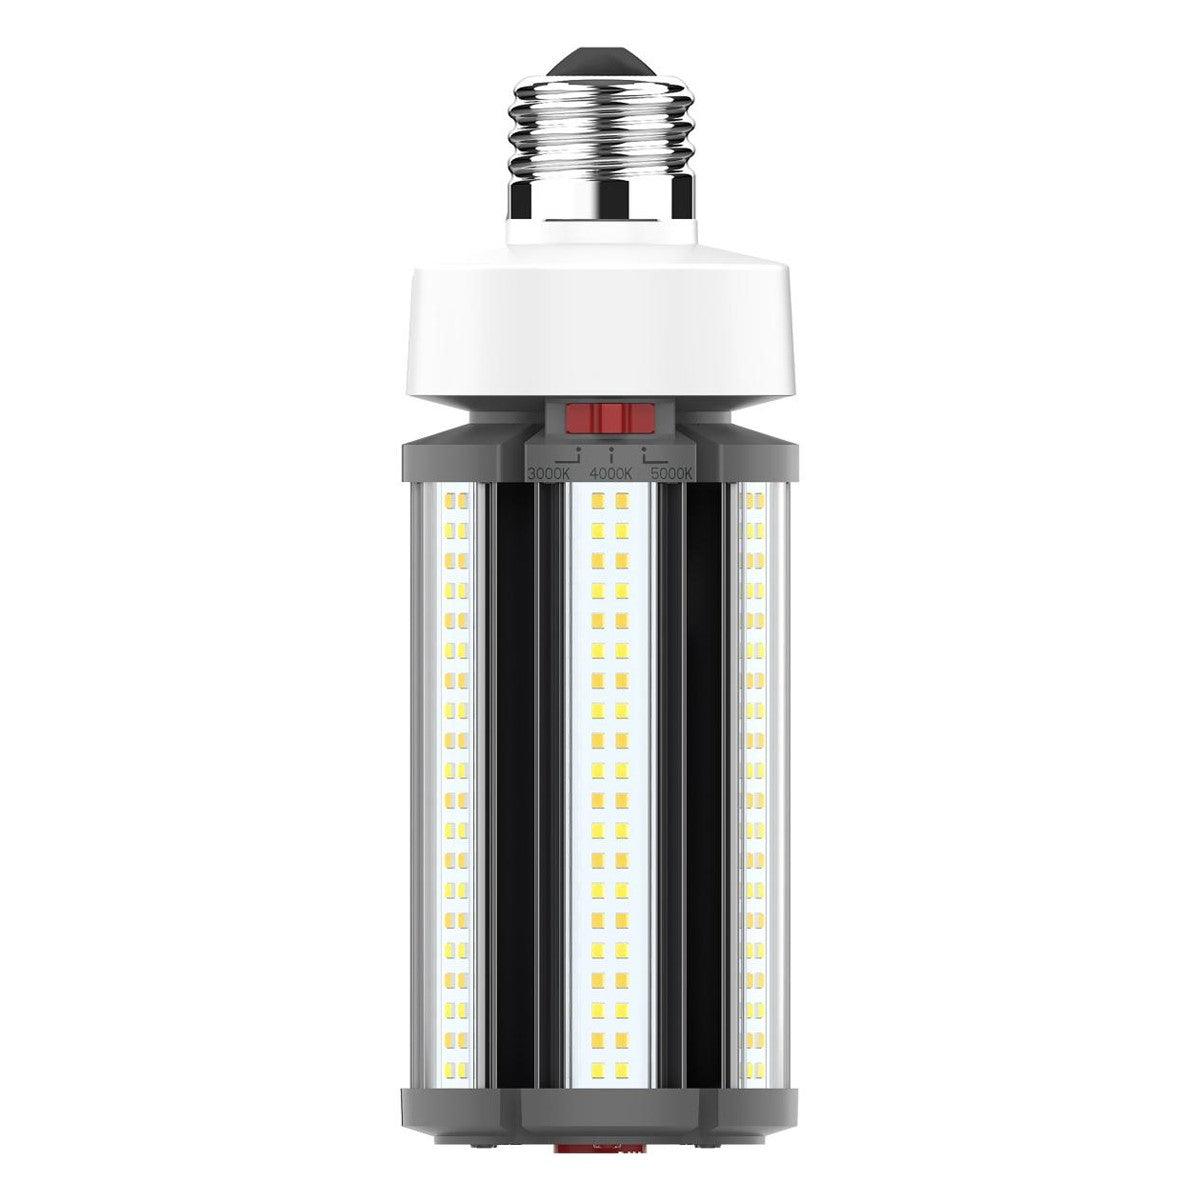 Hi-Pro Retrofit LED Corn Bulb, 36W, 5040 Lumens, Selectable CCT, 30K/40K/50K, E26 Base, 120-277V - Bees Lighting